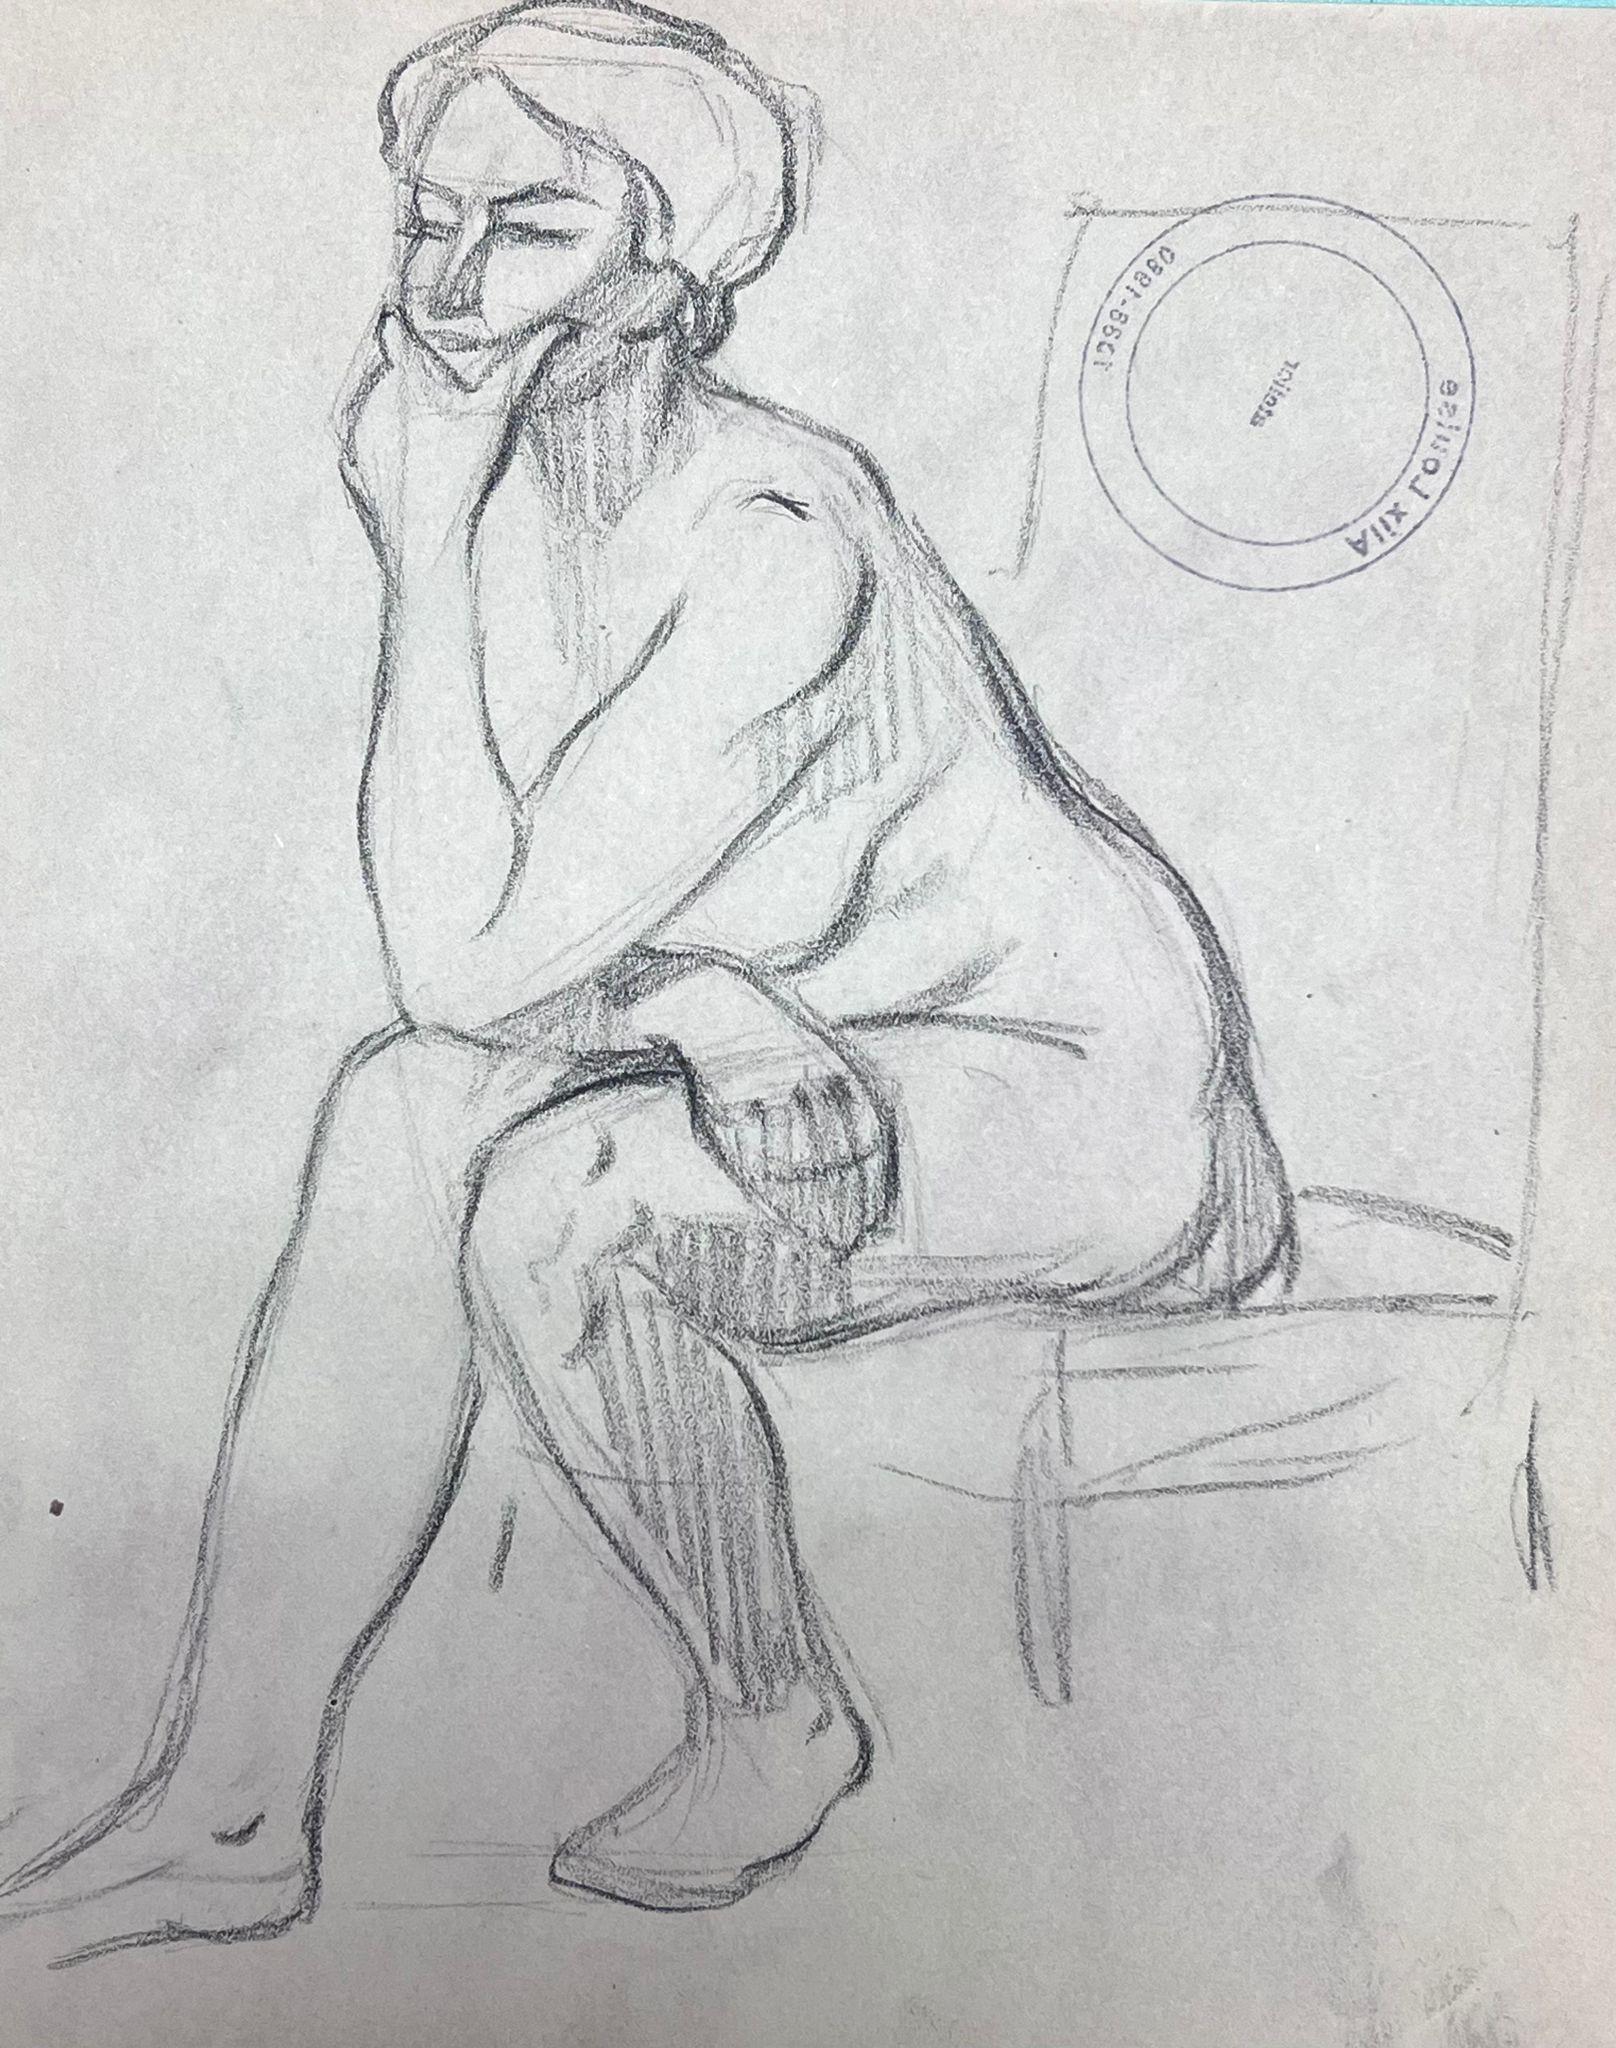 Croquis au crayon impressionniste français d'une figure féminine nue profondément en pensée - Painting de Louise Alix